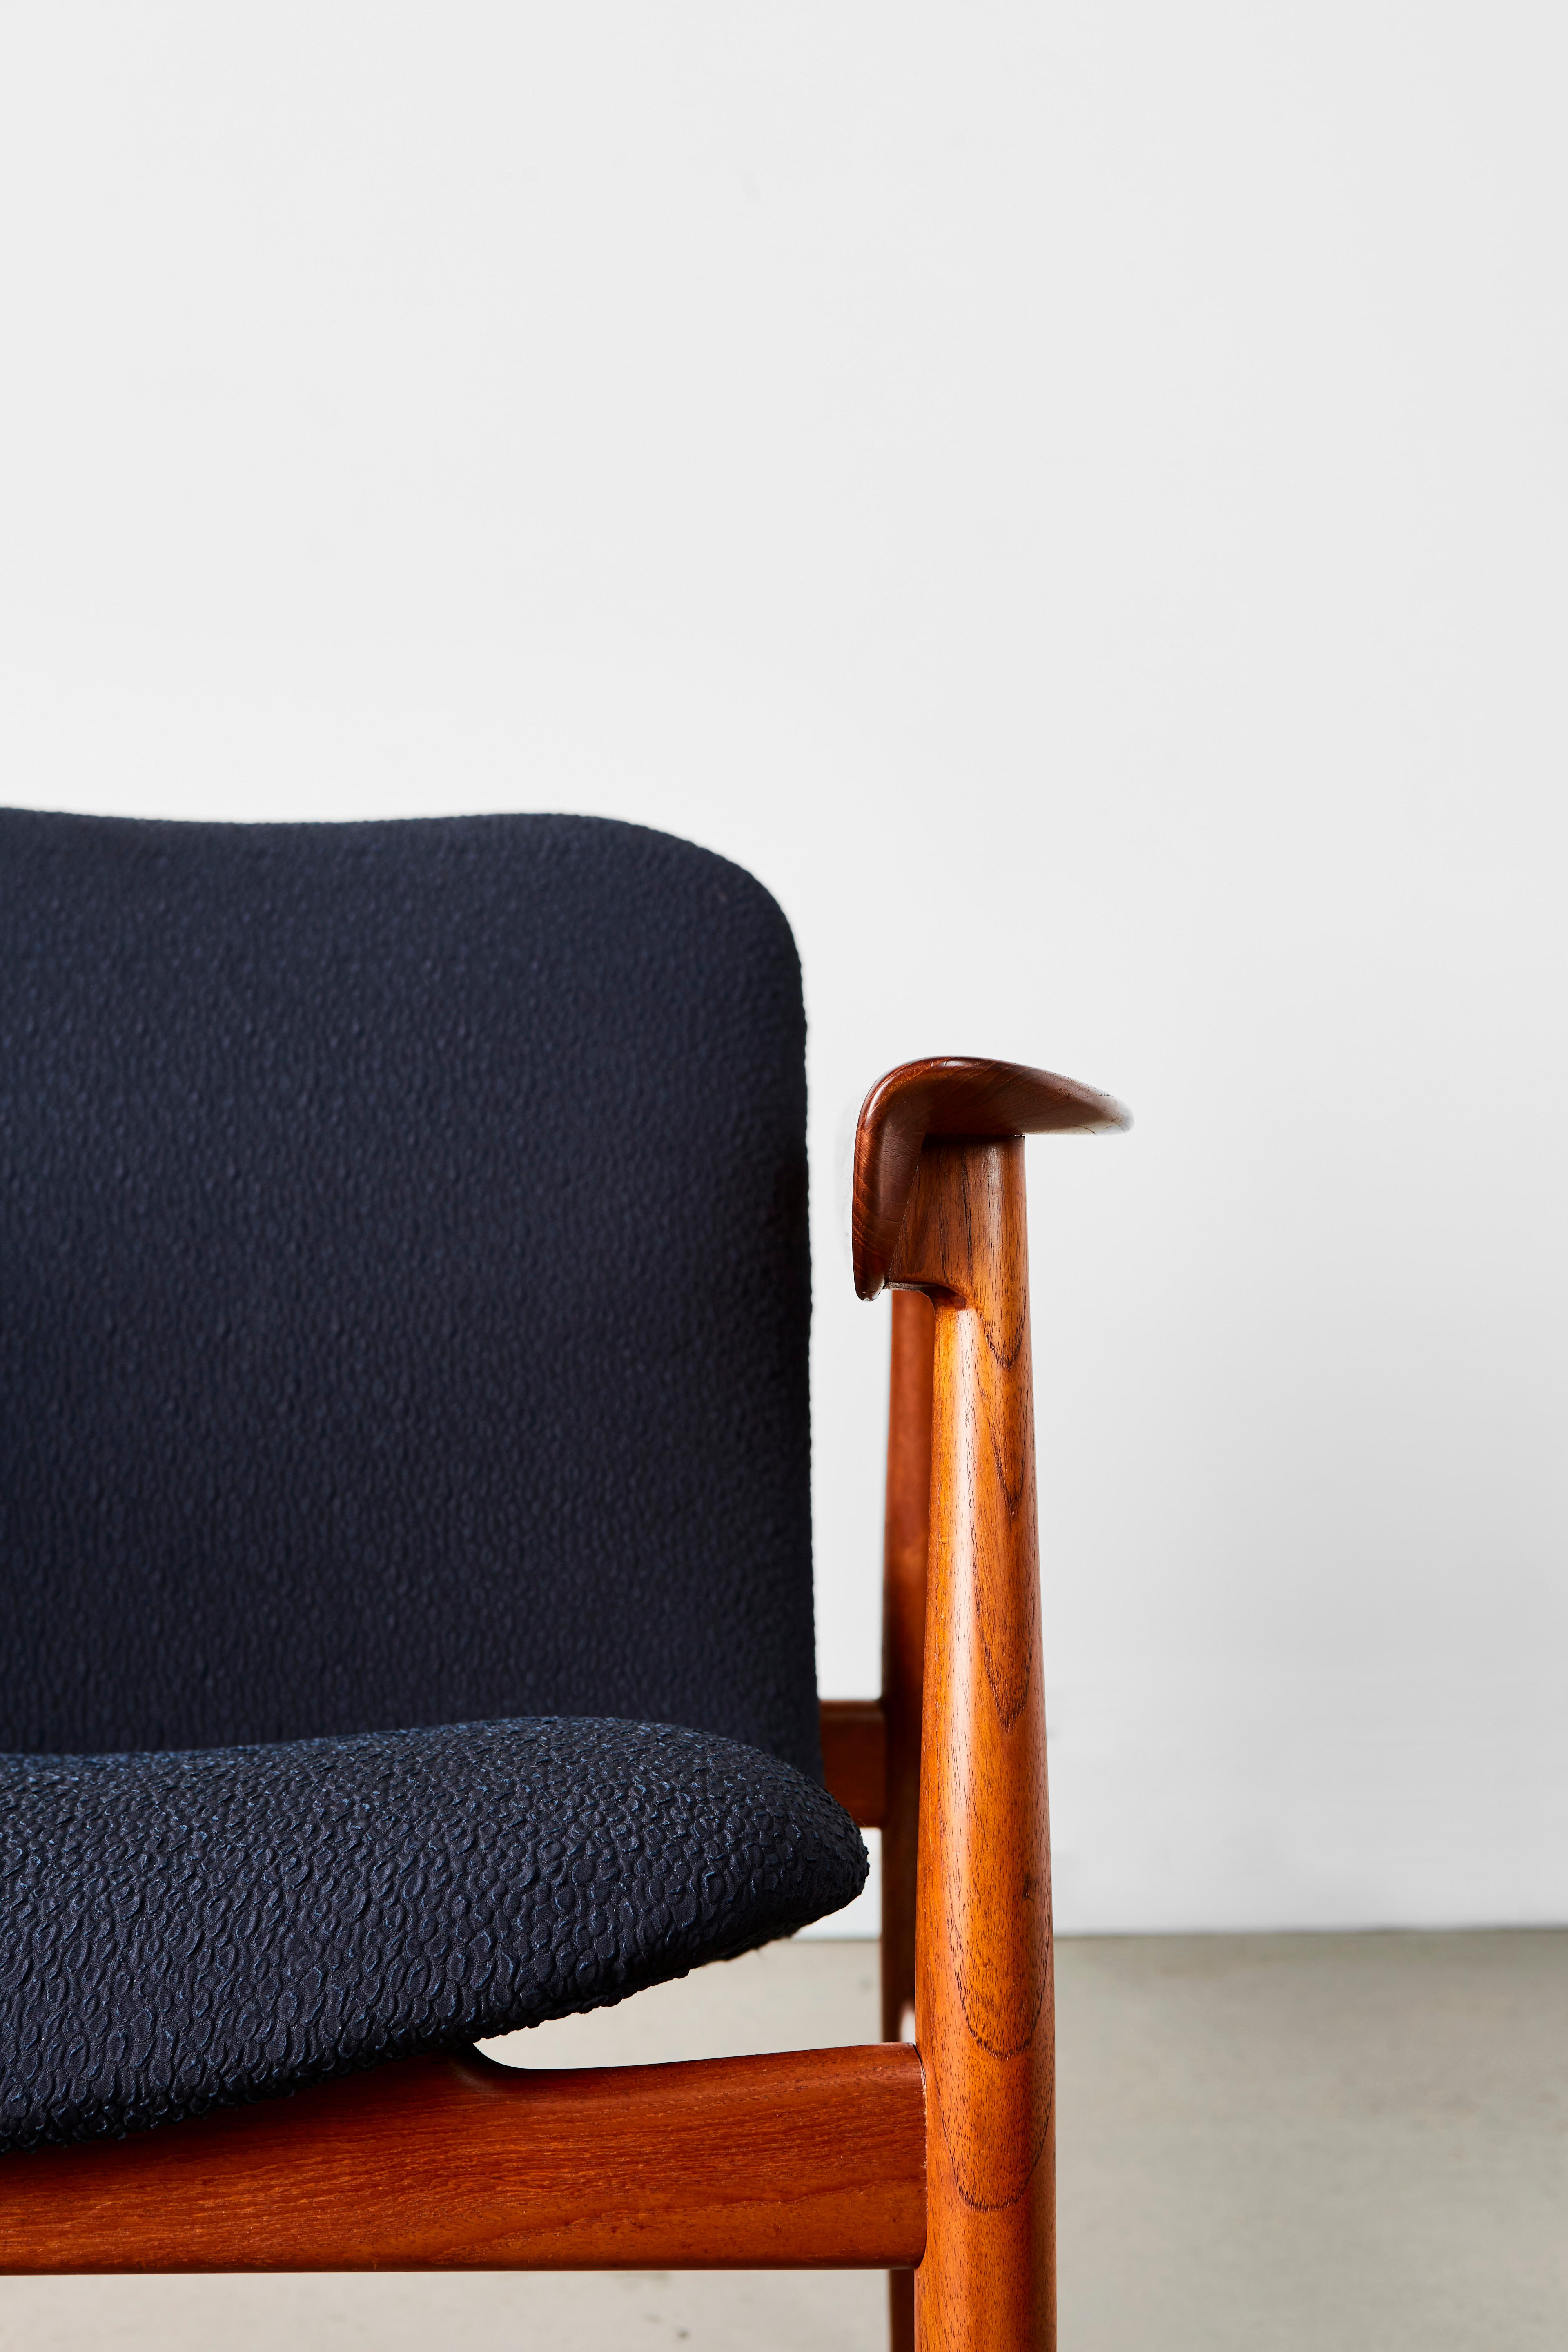 Finn Juhl Model BO-118 Teak Lounge Chair for Bovirke For Sale 3